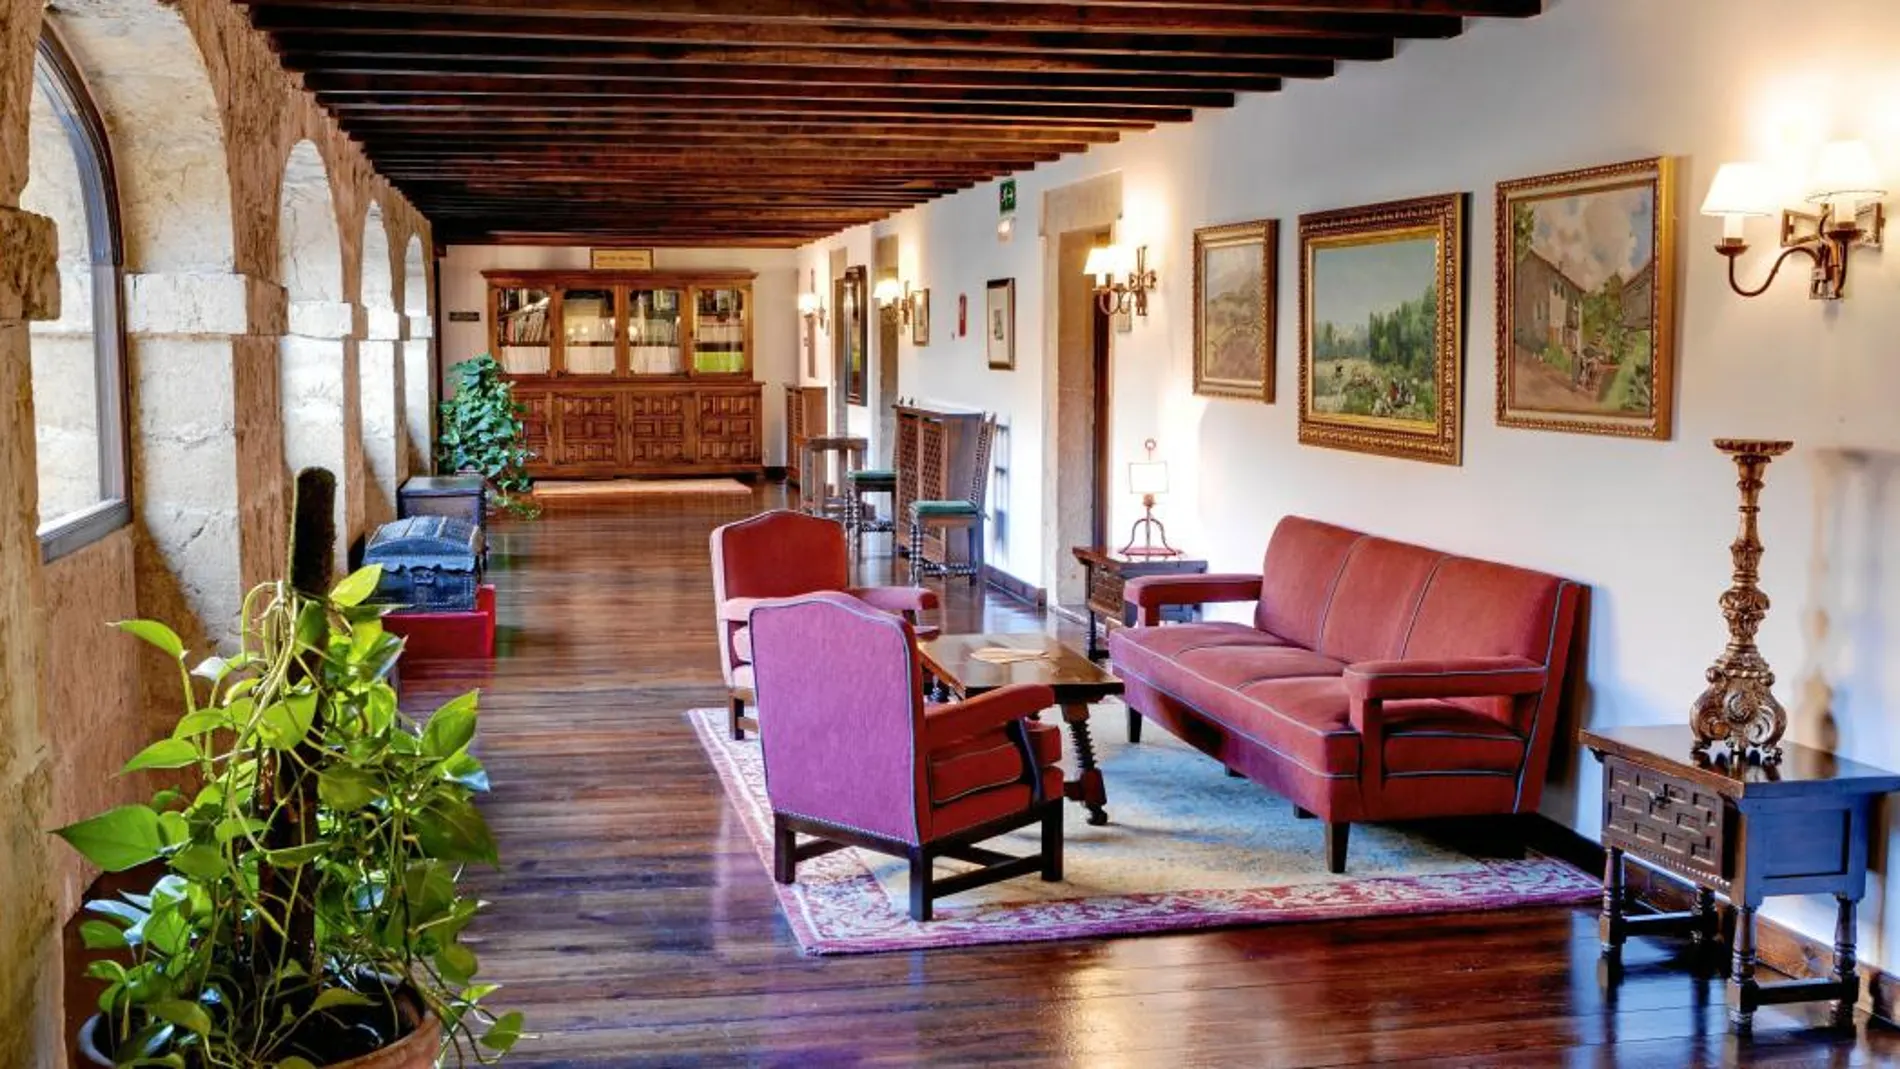 Este Parador pertenece a la división Naturia, que engloba hoteles situados en edificios históricos integrados en la naturaleza